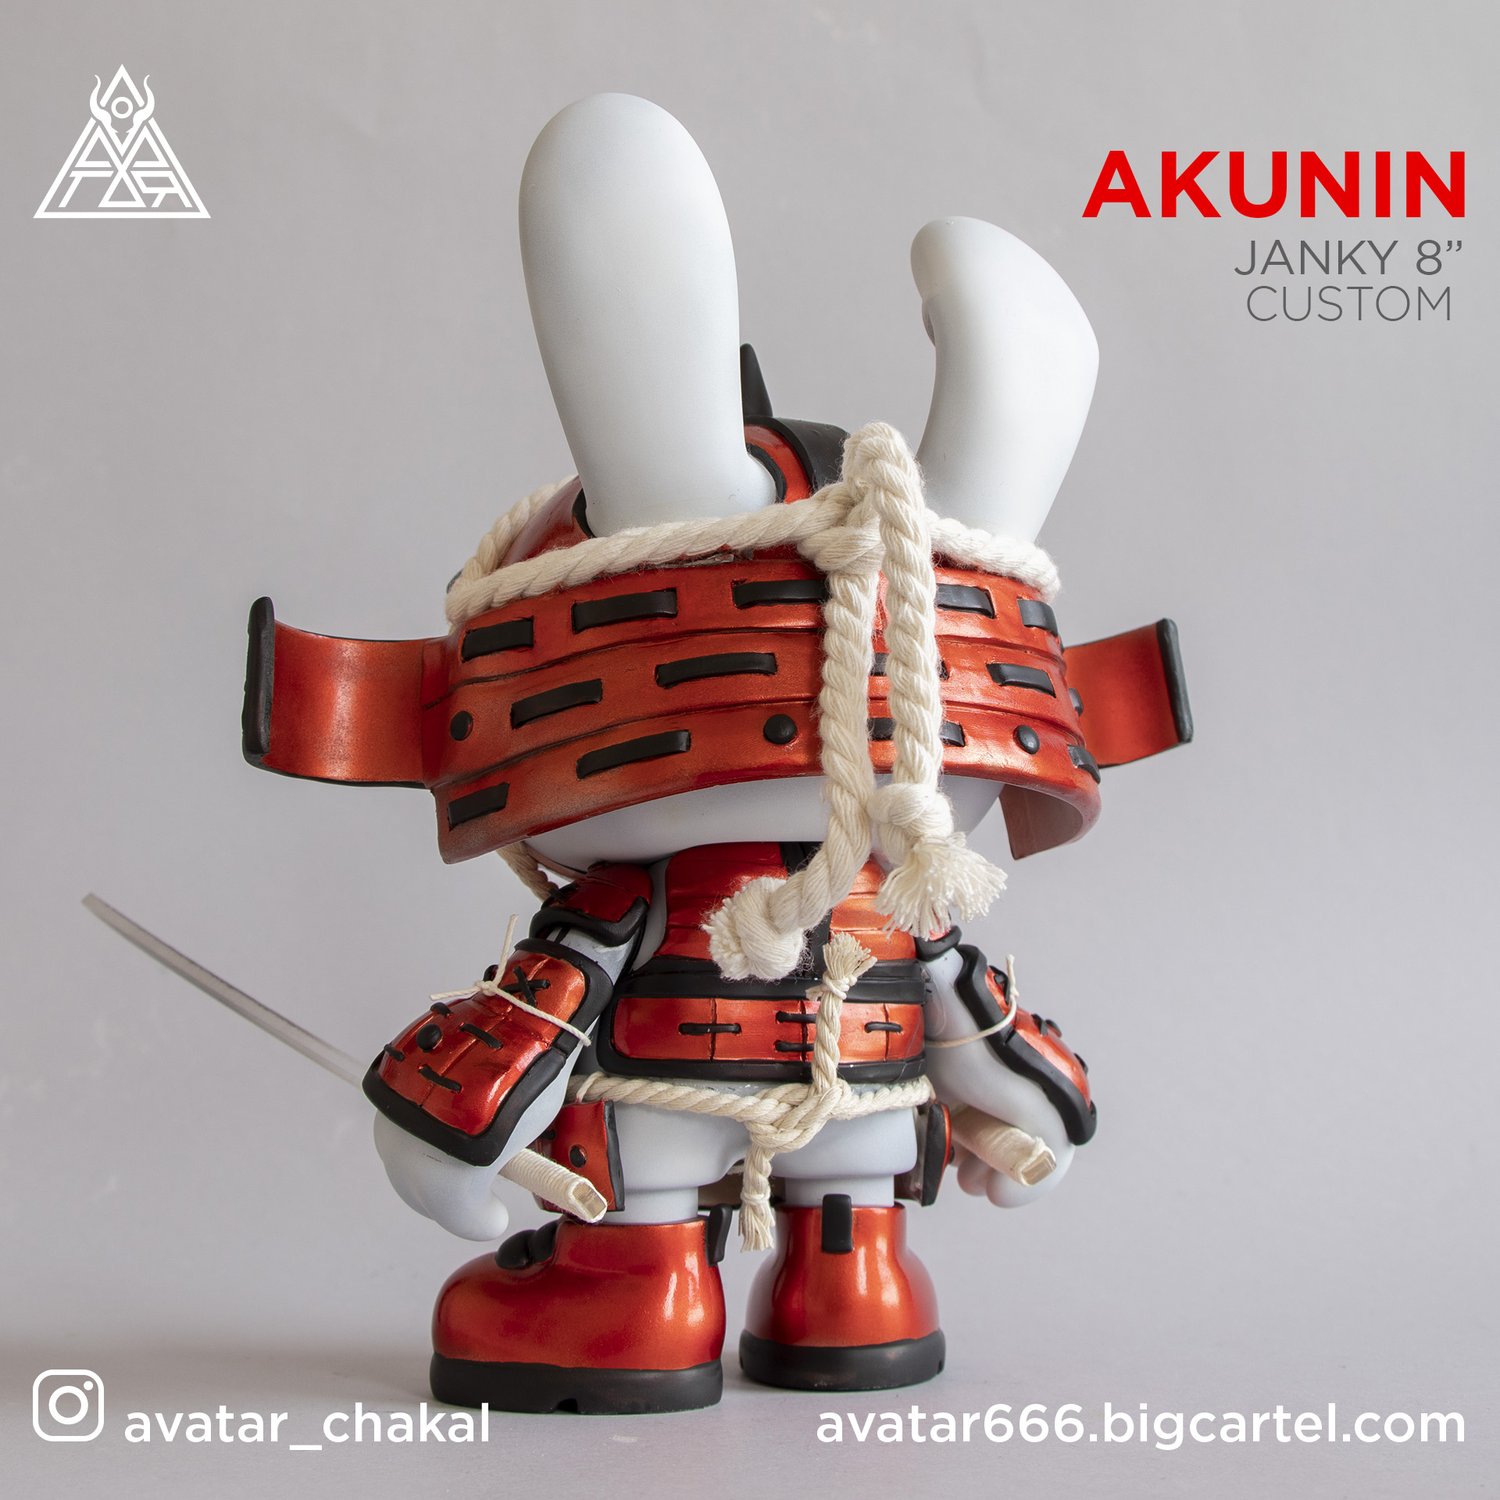 Image of Akunin Janky custom 8"